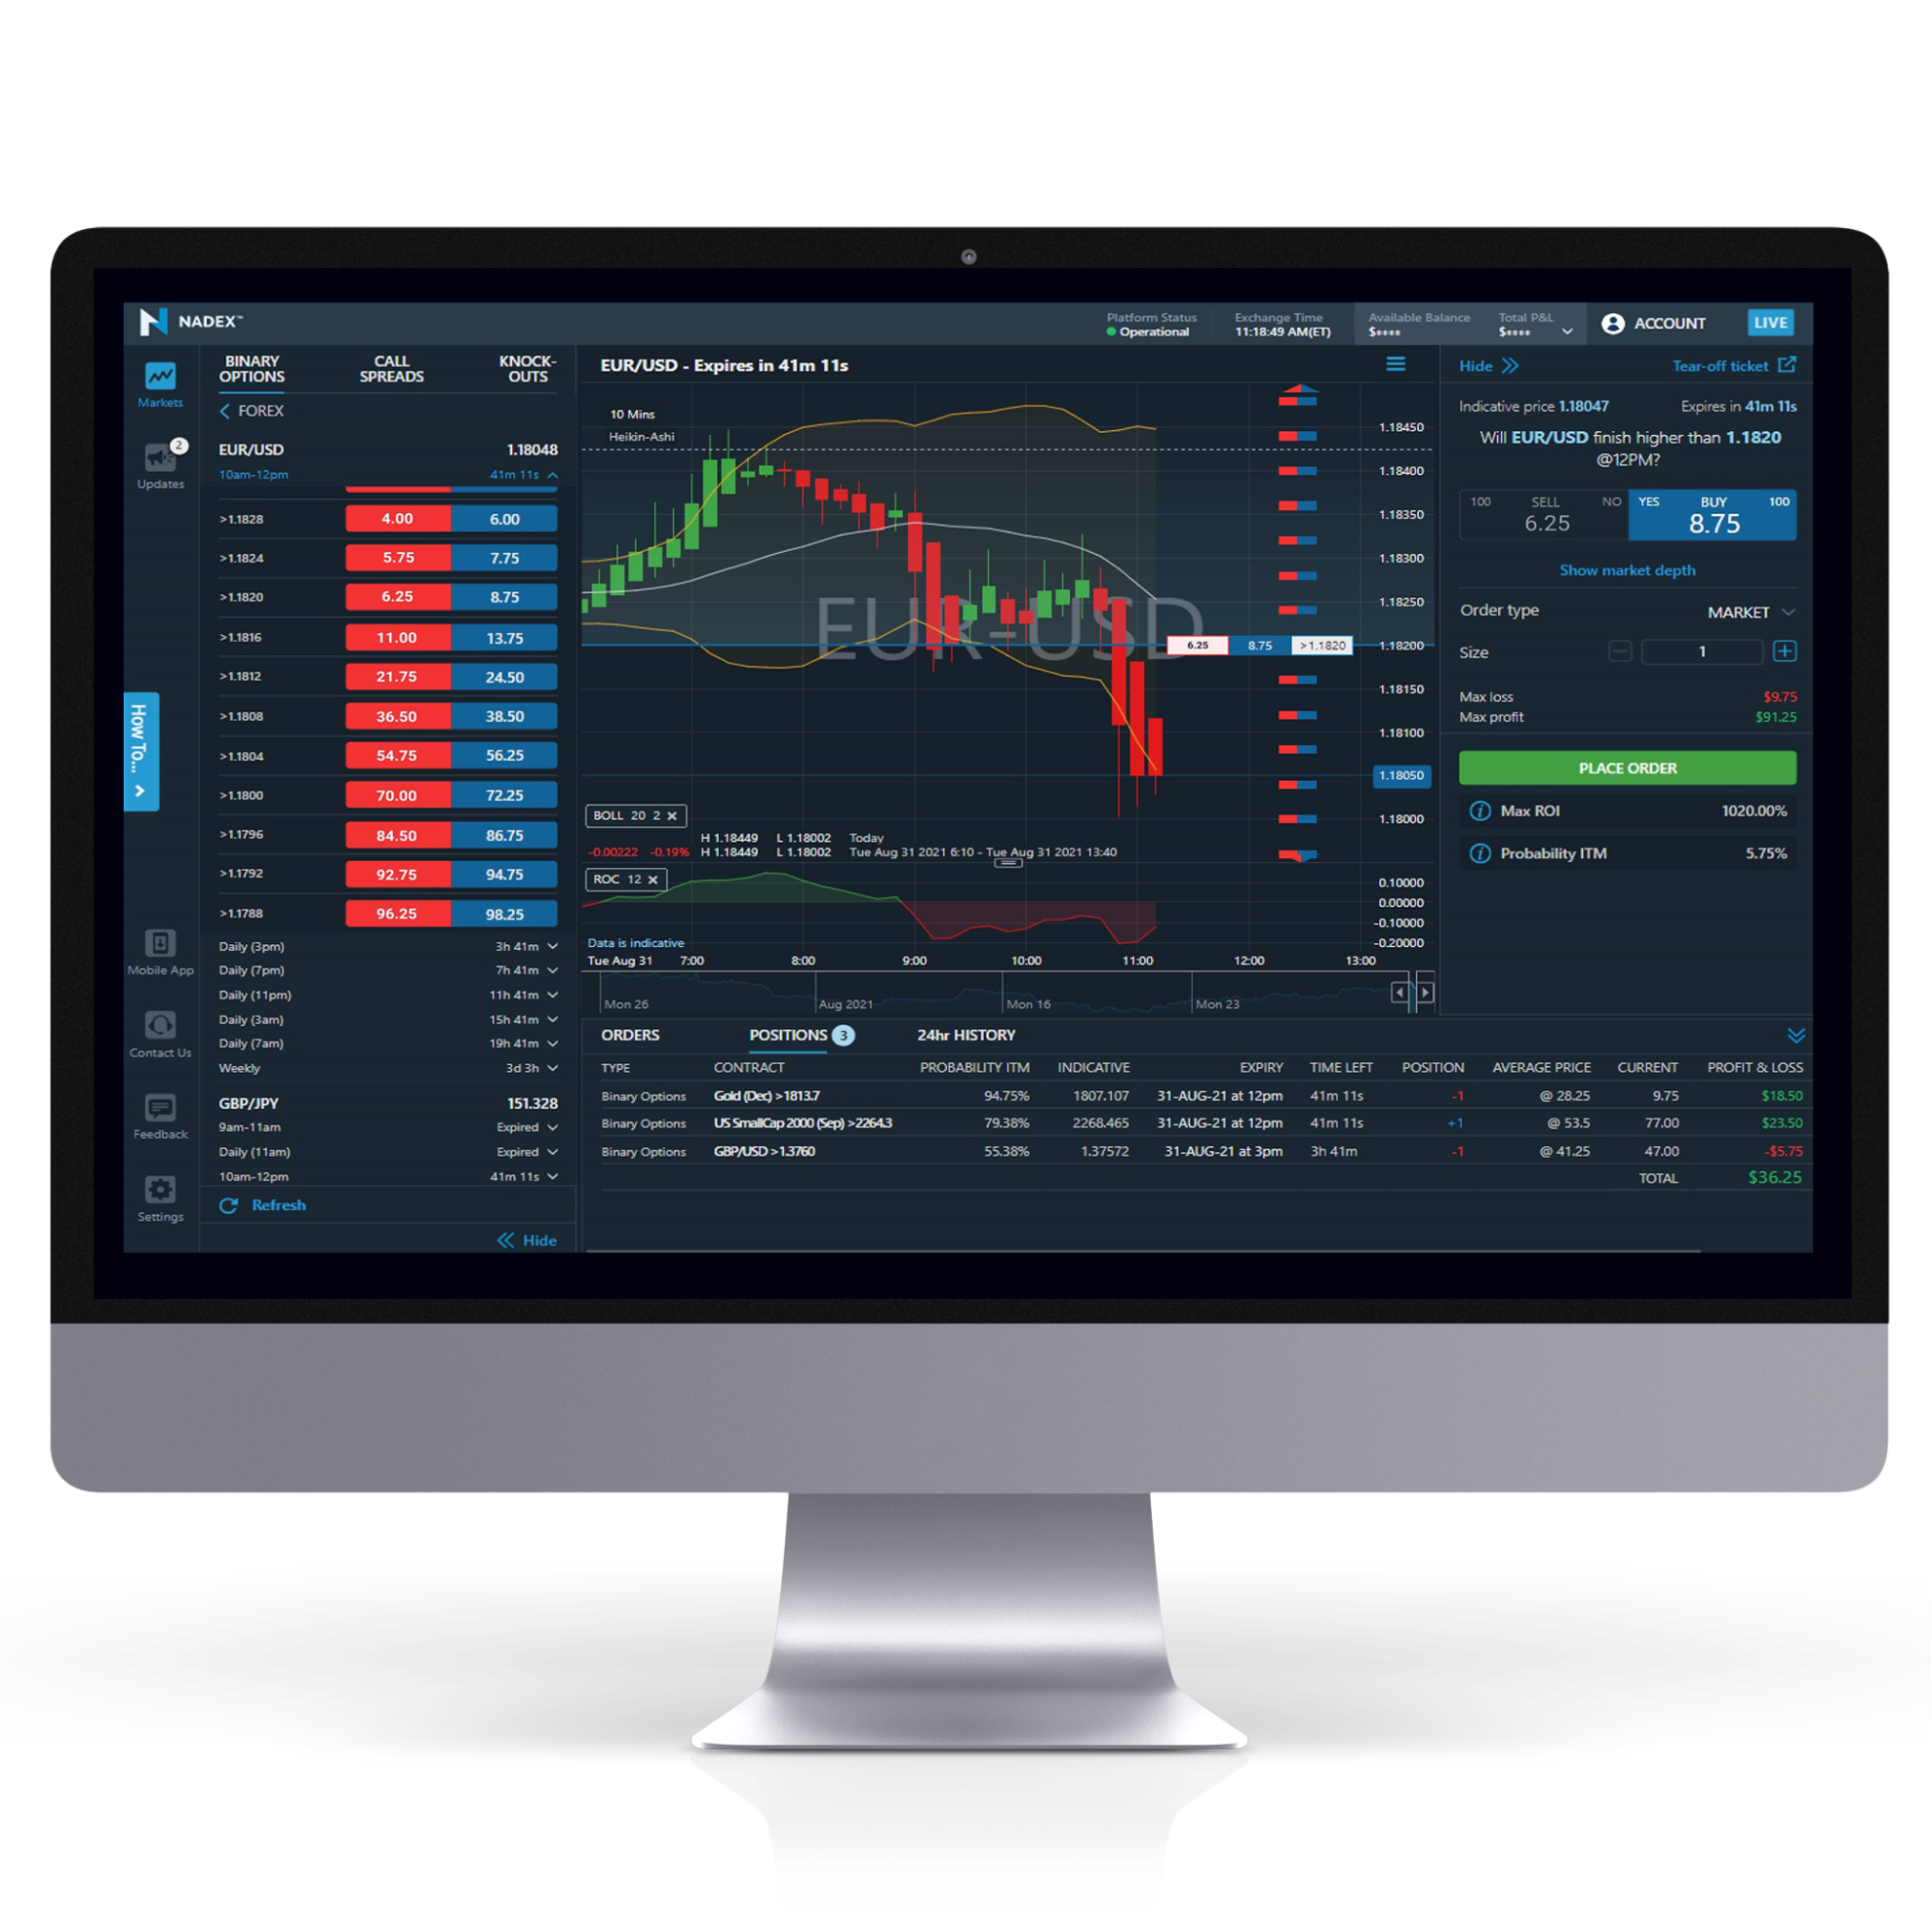 nadex desktop trading platform 